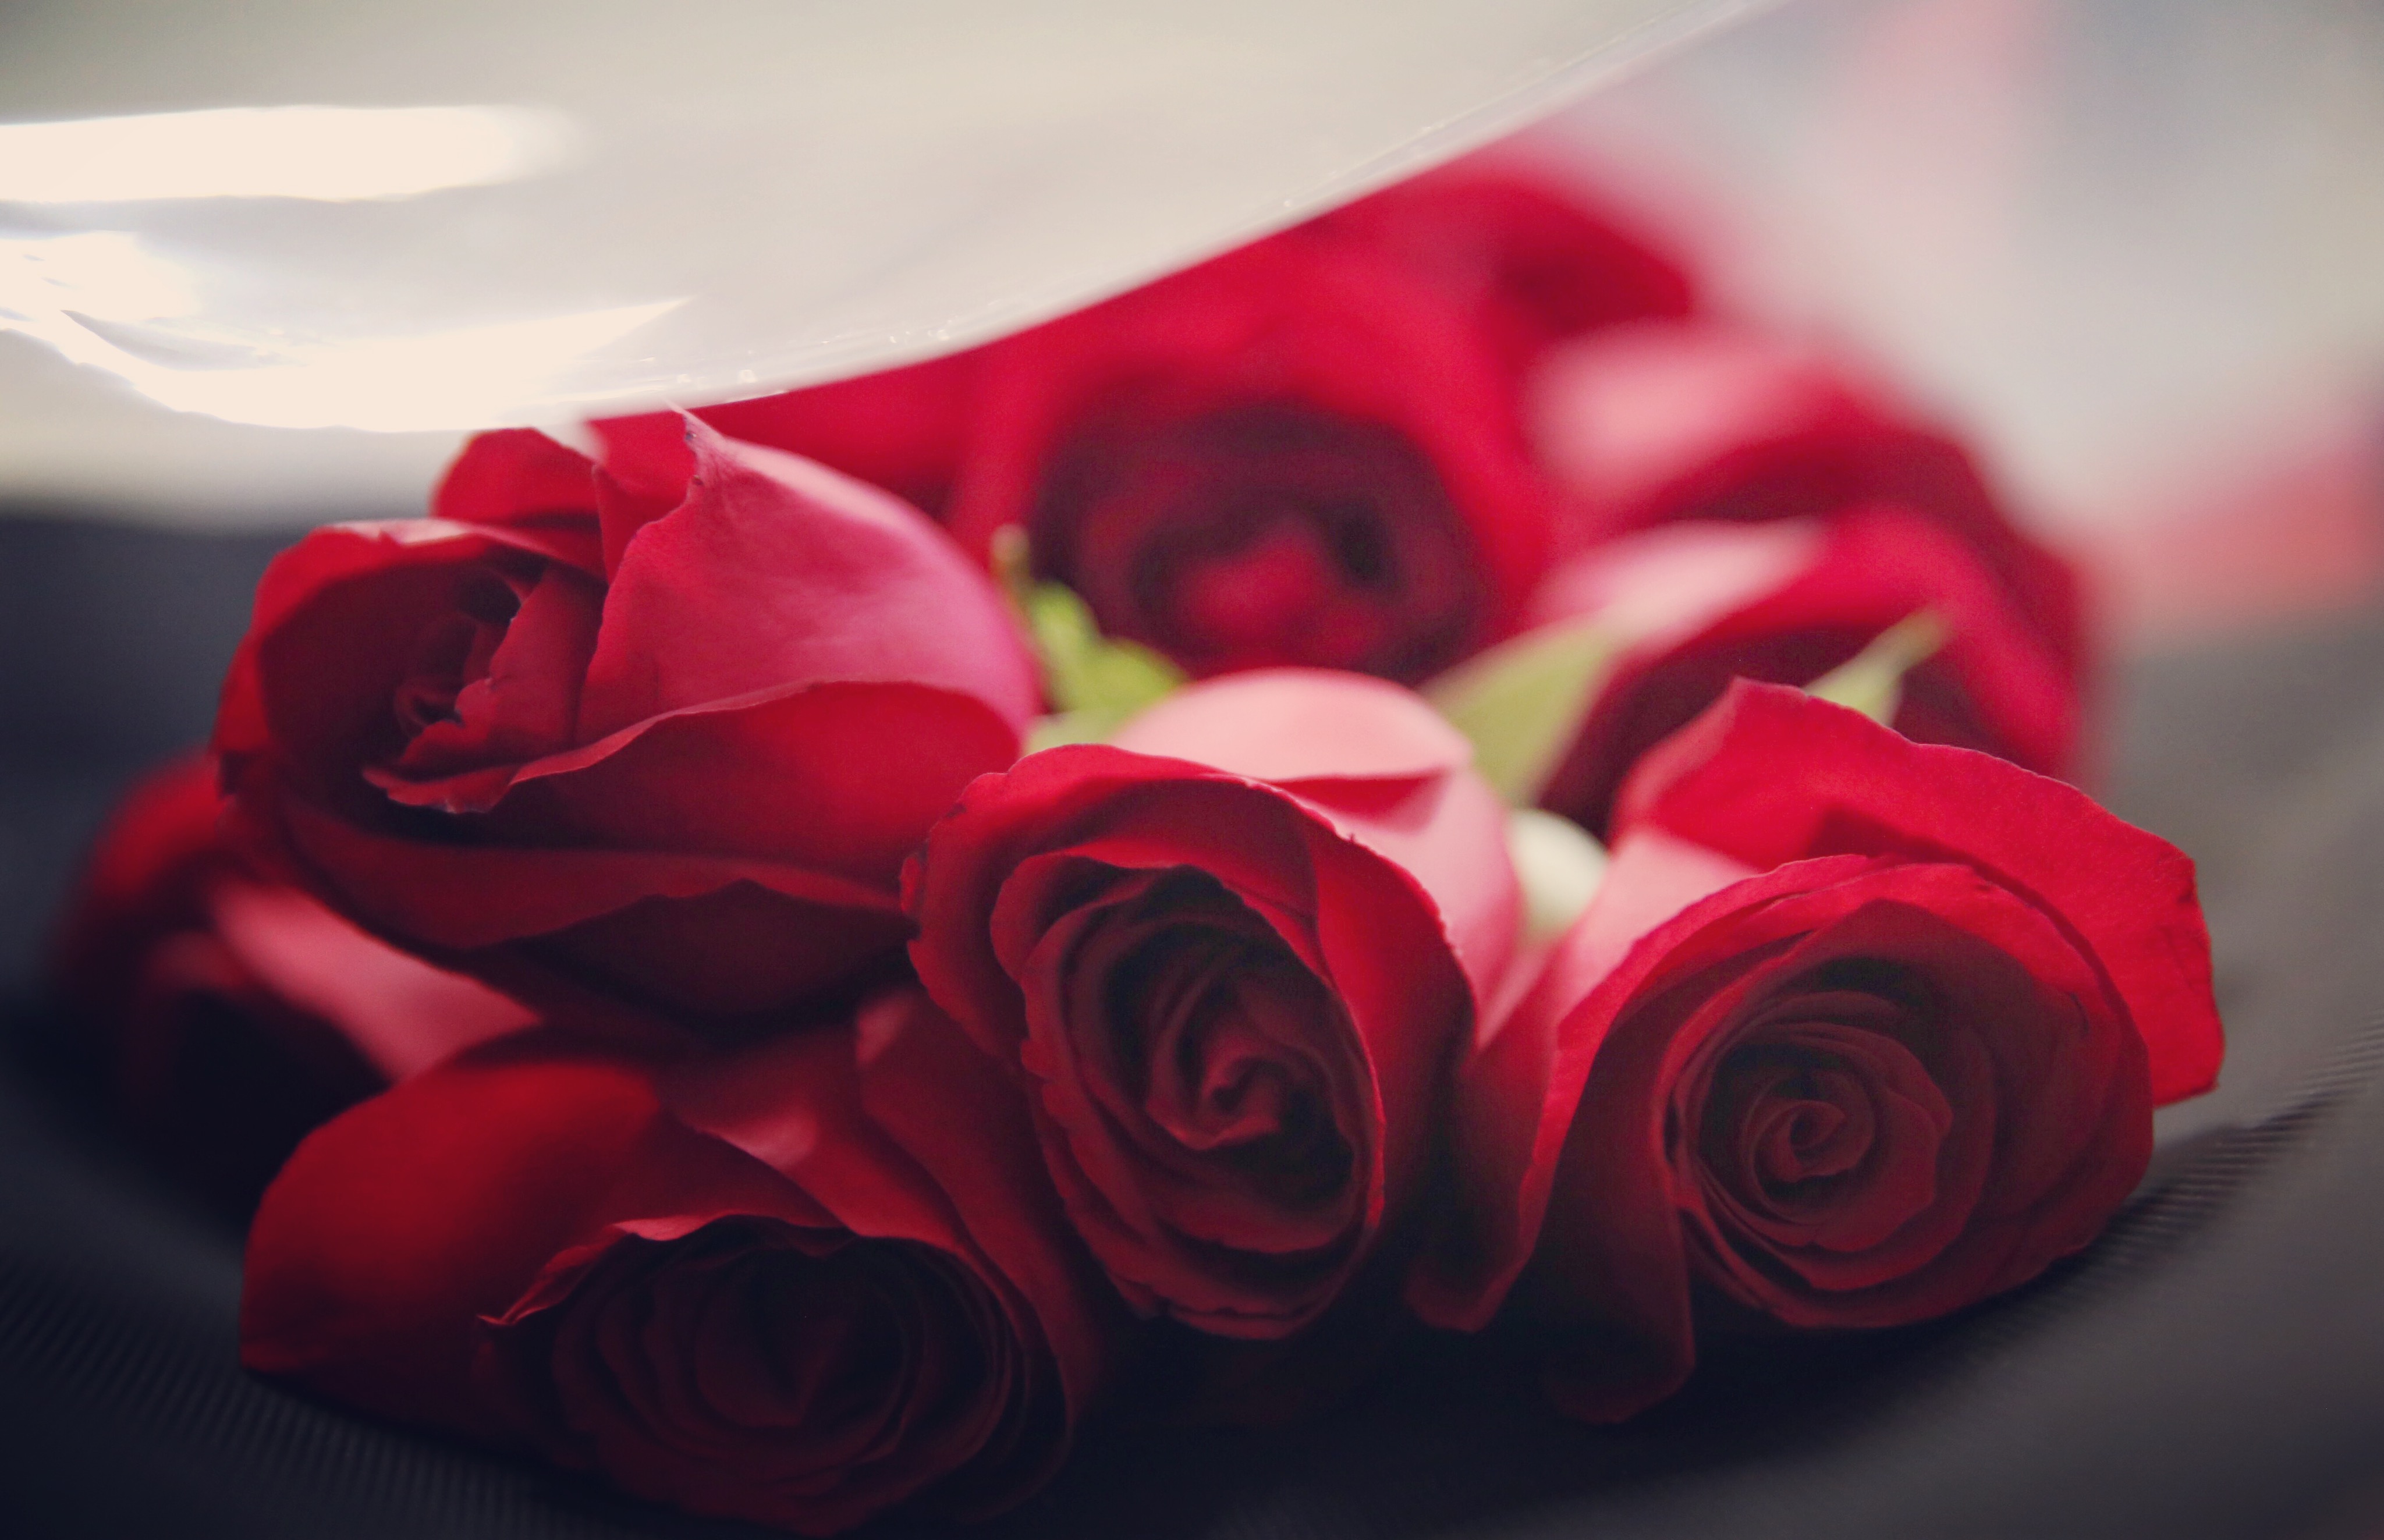 Ngắm nhìn vẻ đẹp của những bó hoa hồng đỏ tặng sinh nhật bạn gái ...